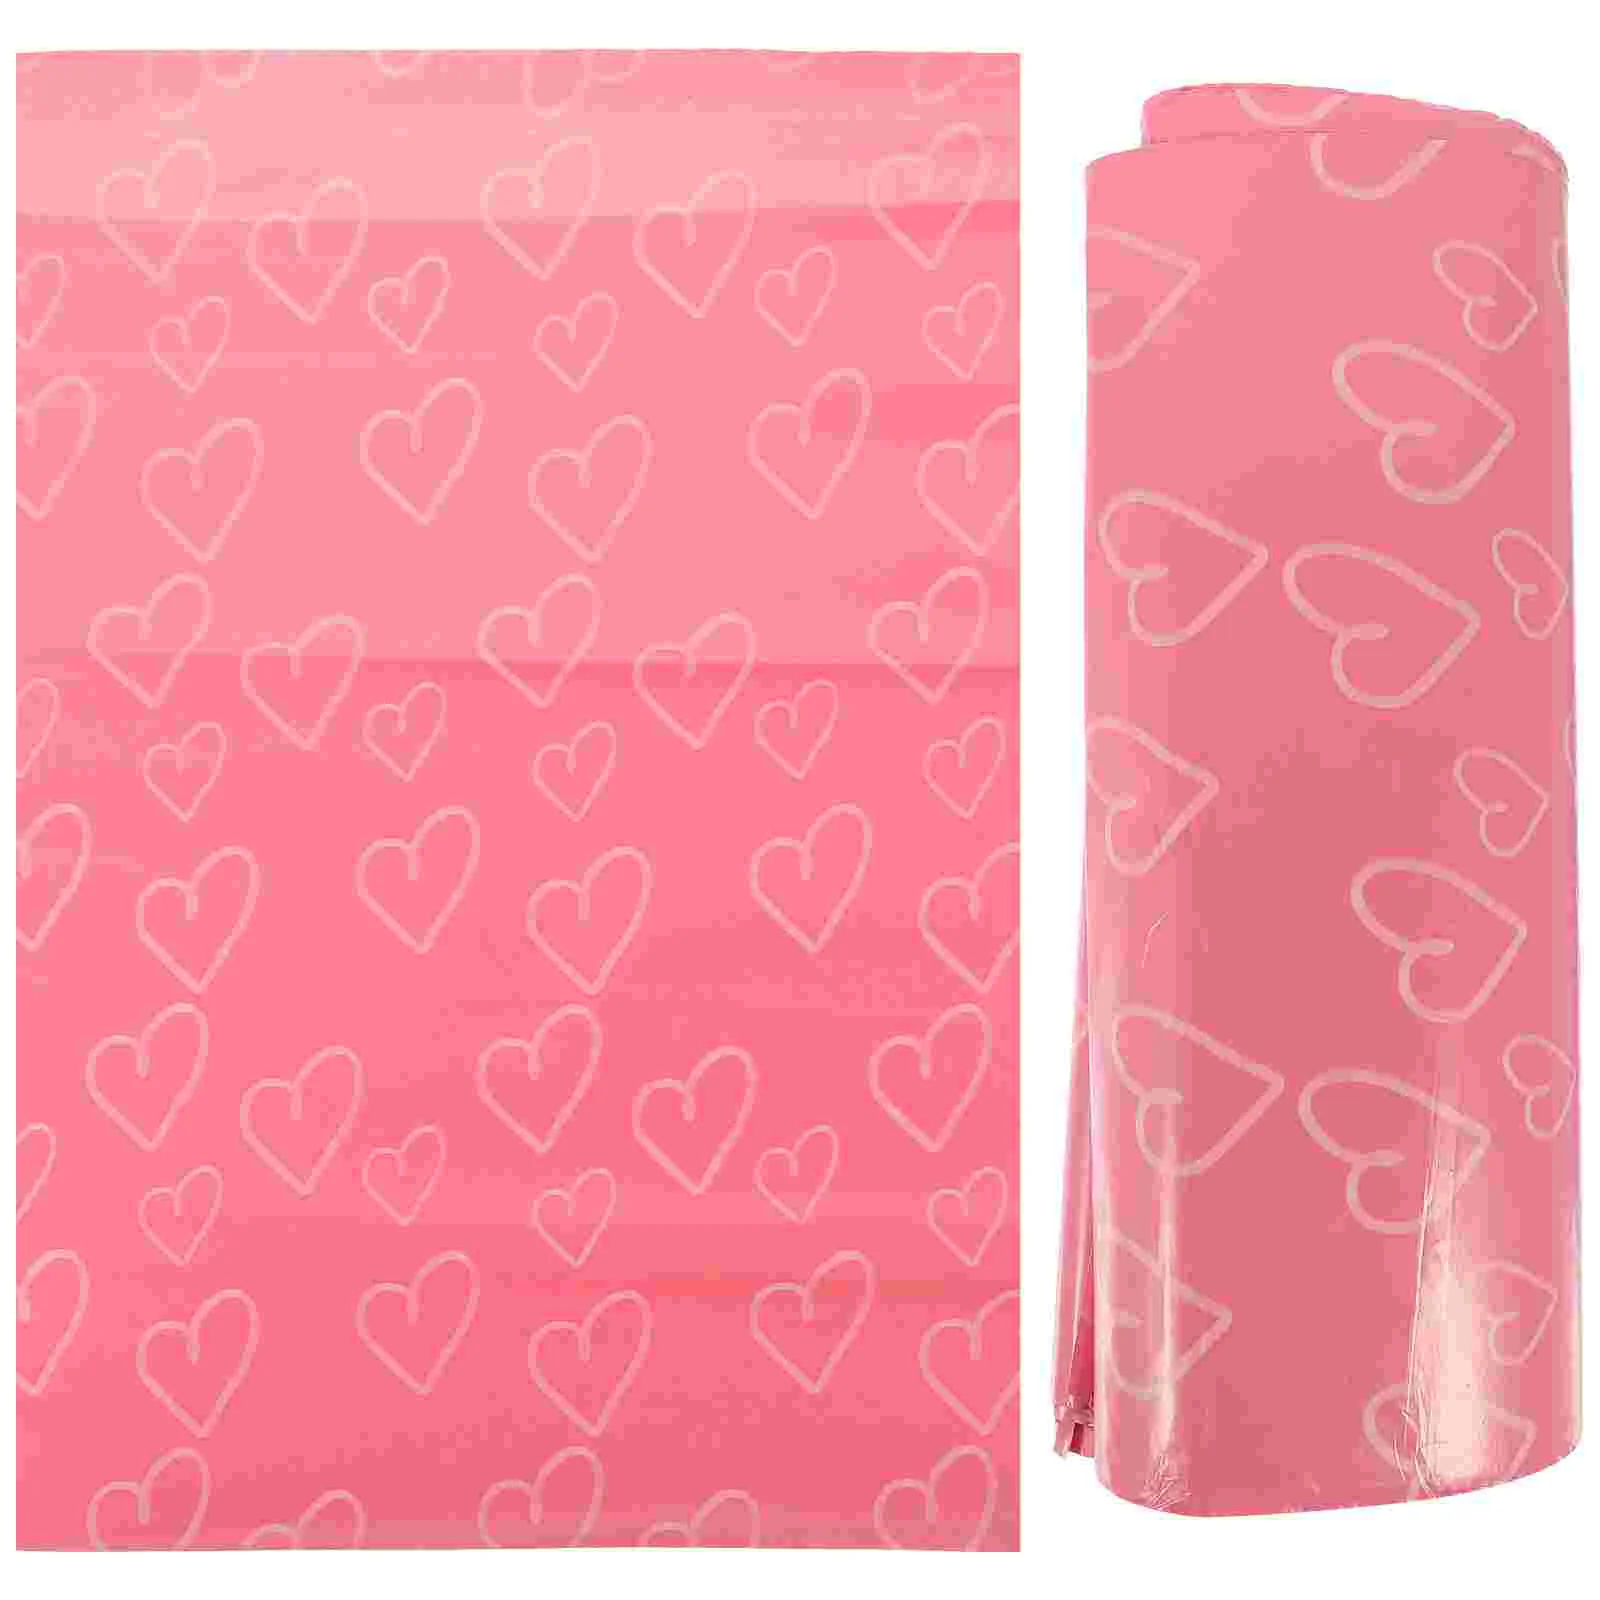 

Пакеты для доставки, самозапечатывающиеся сумочки для девушек, ежедневная гигиеническая одноразовая Женская упаковка, клейкие курьерские утолщенные прокладки